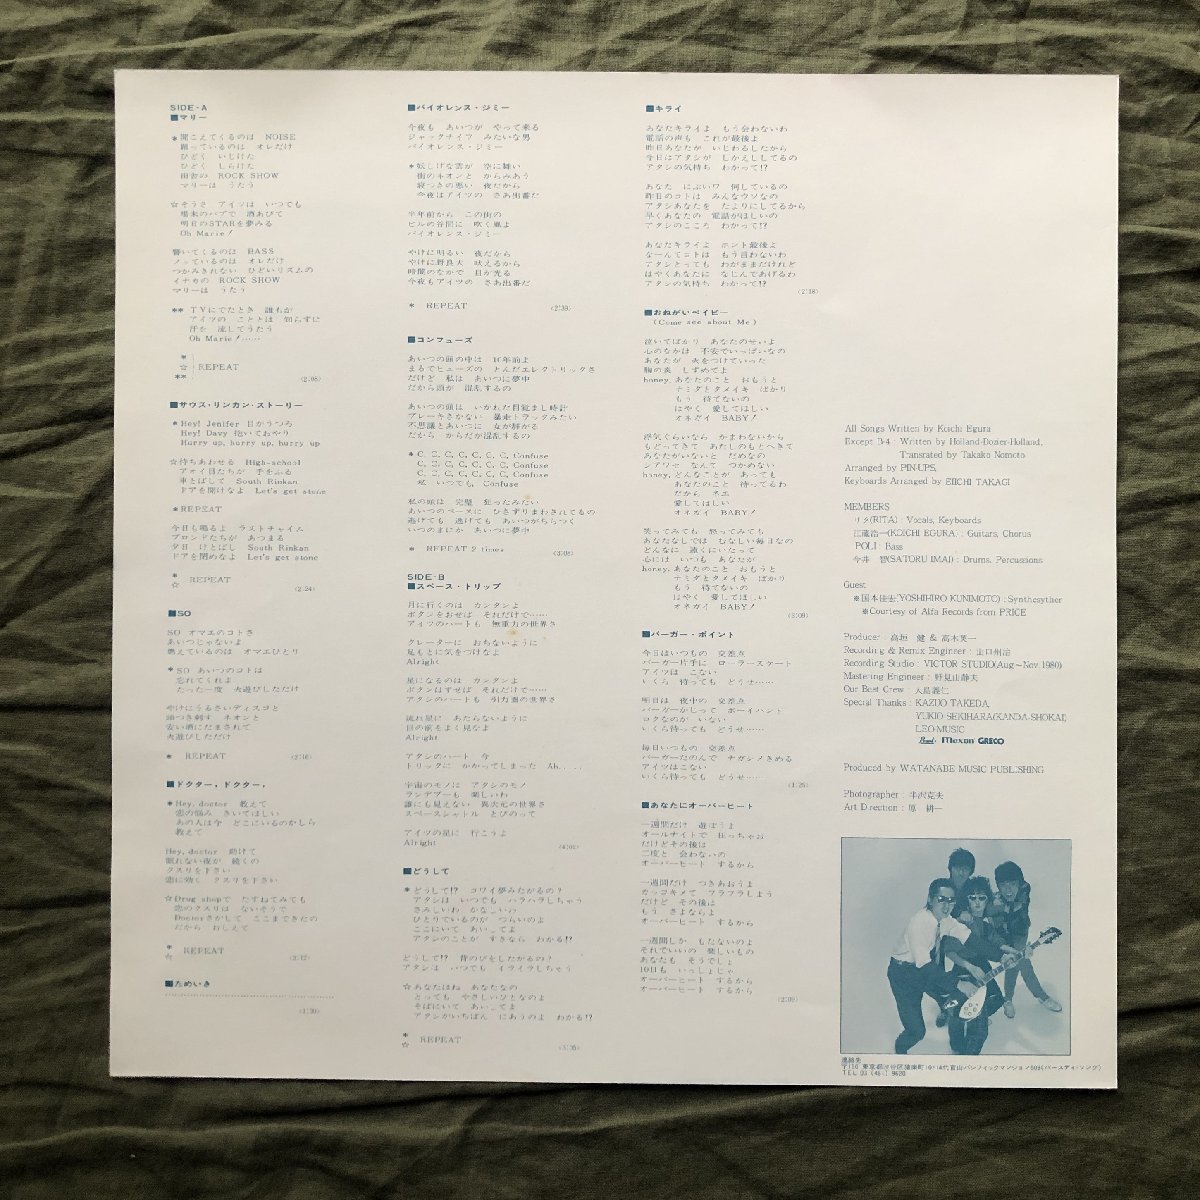 傷なし美盤 良ジャケ レア盤 プロモ盤 1980年 オリジナルリリース盤 ピンナップス Pinups LPレコード S/T 名盤 リタ 当時ものプロモ資料付_画像7